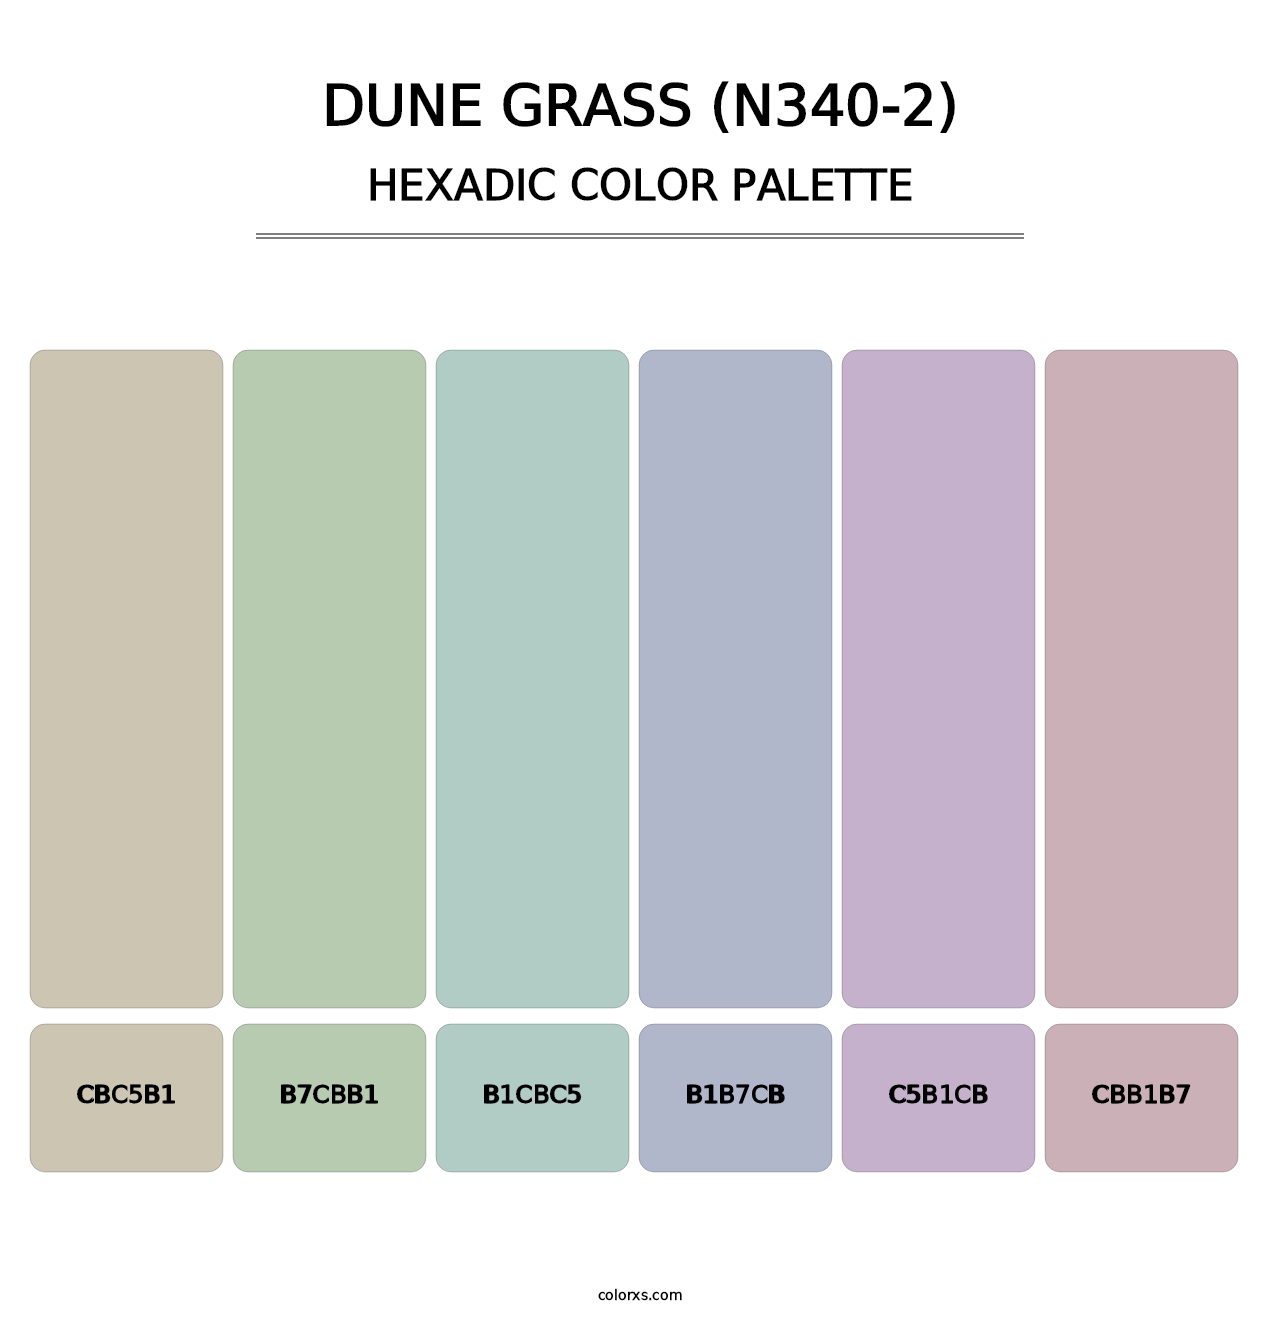 Dune Grass (N340-2) - Hexadic Color Palette